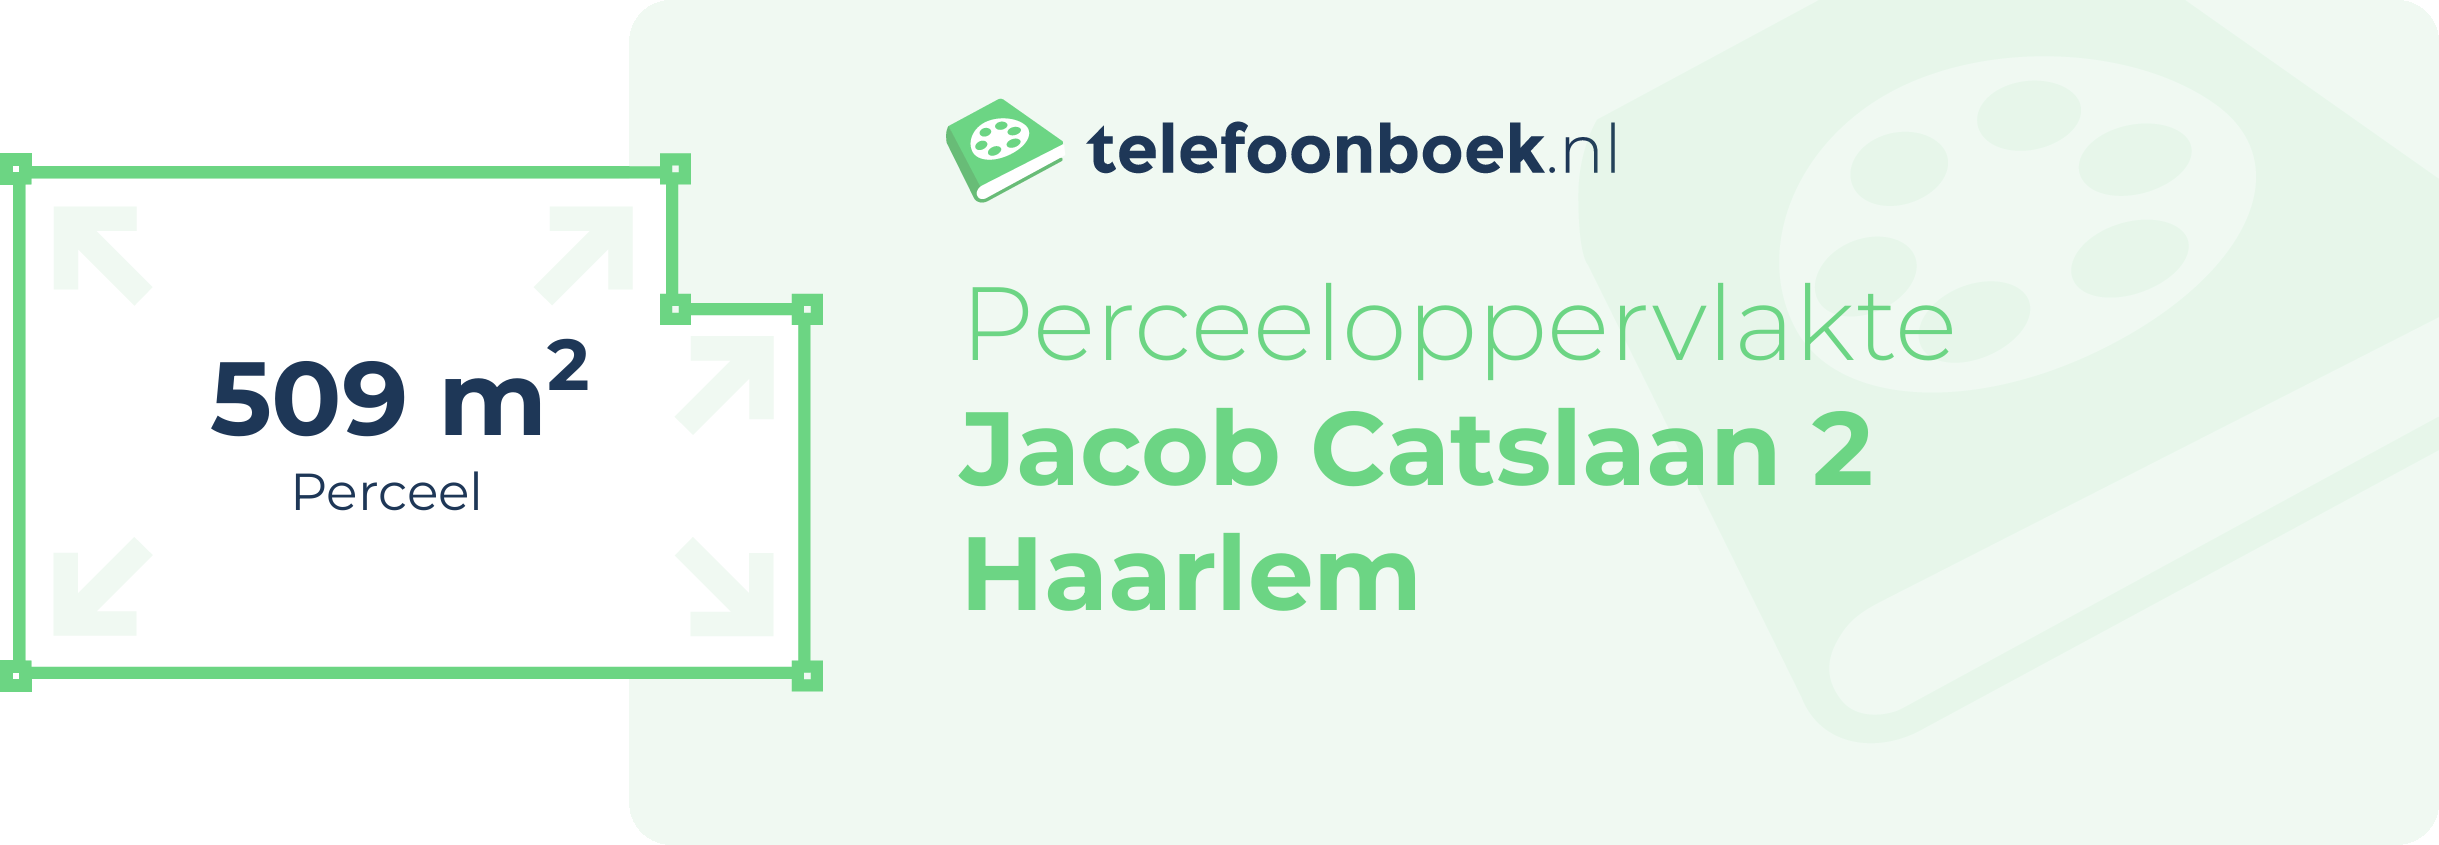 Perceeloppervlakte Jacob Catslaan 2 Haarlem